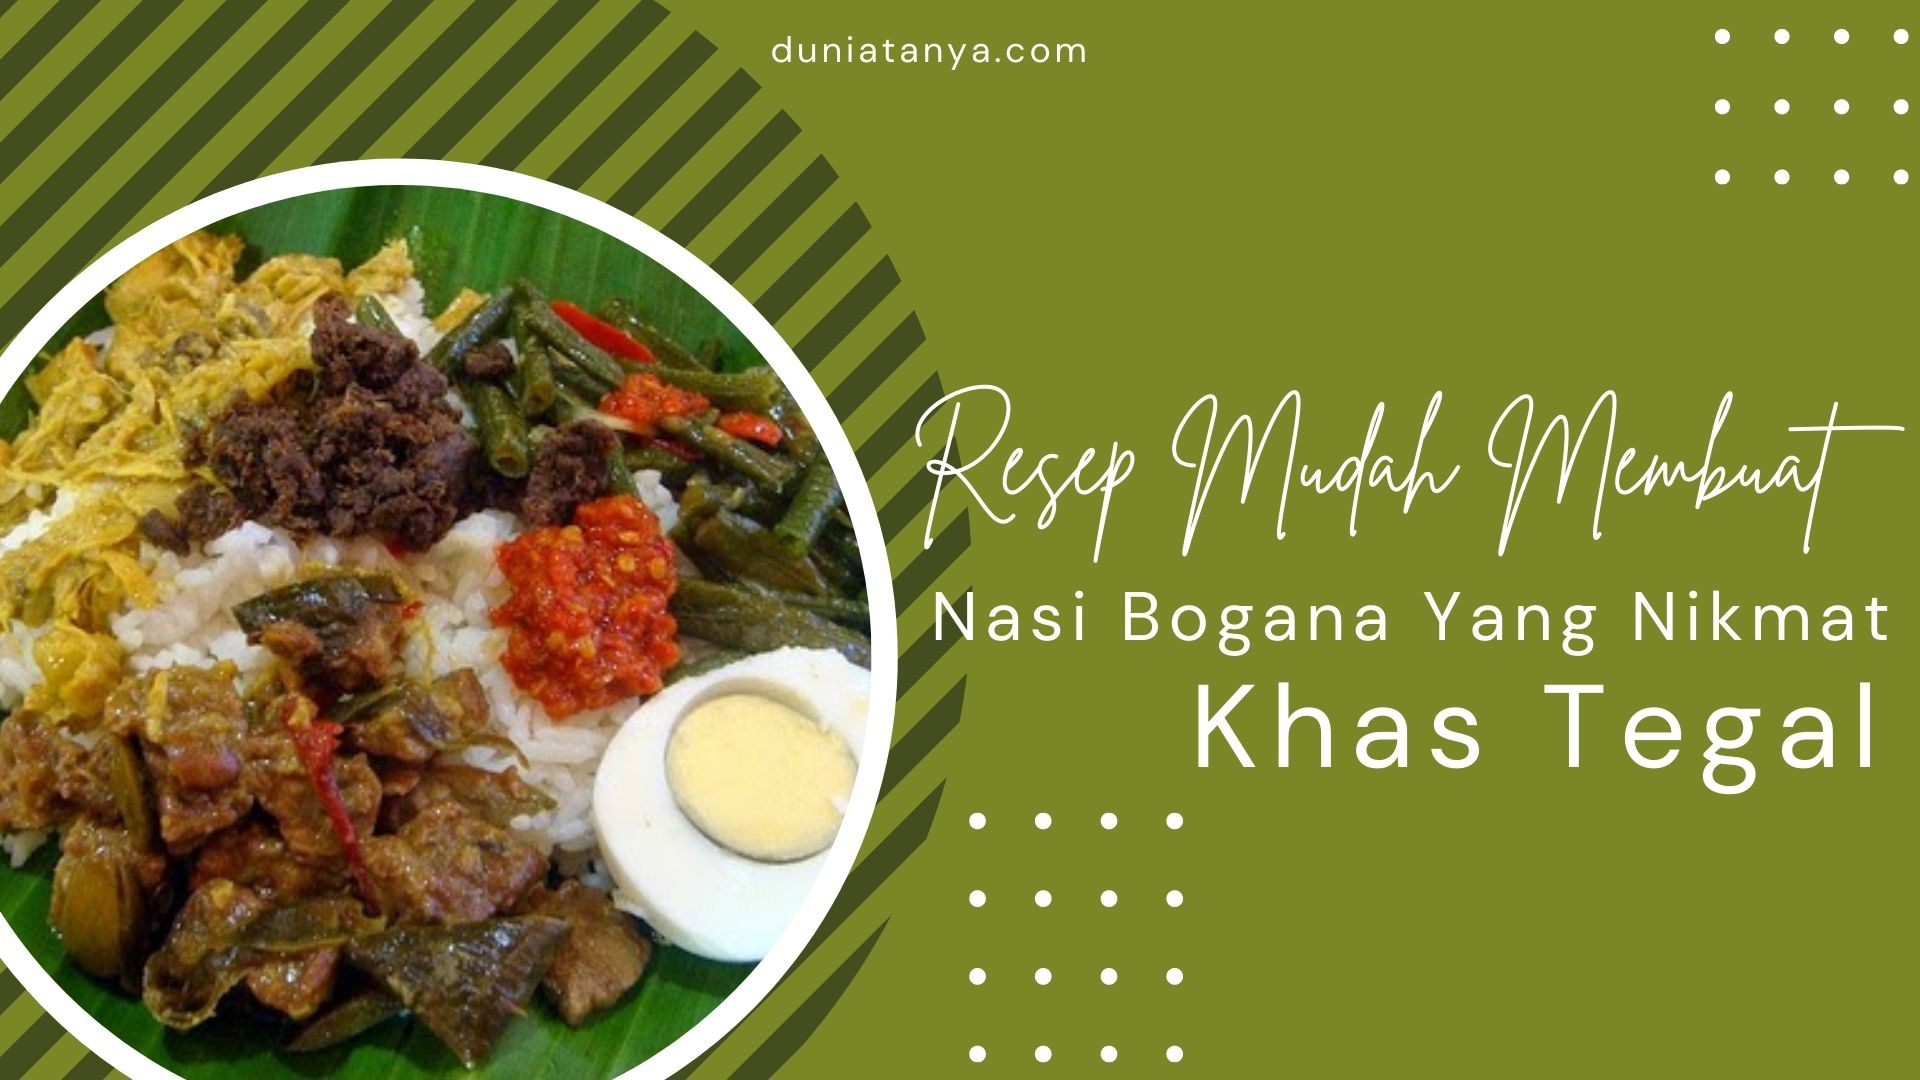 You are currently viewing Resep Mudah Membuat Nasi Bogana Yang Nikmat Khas Tegal